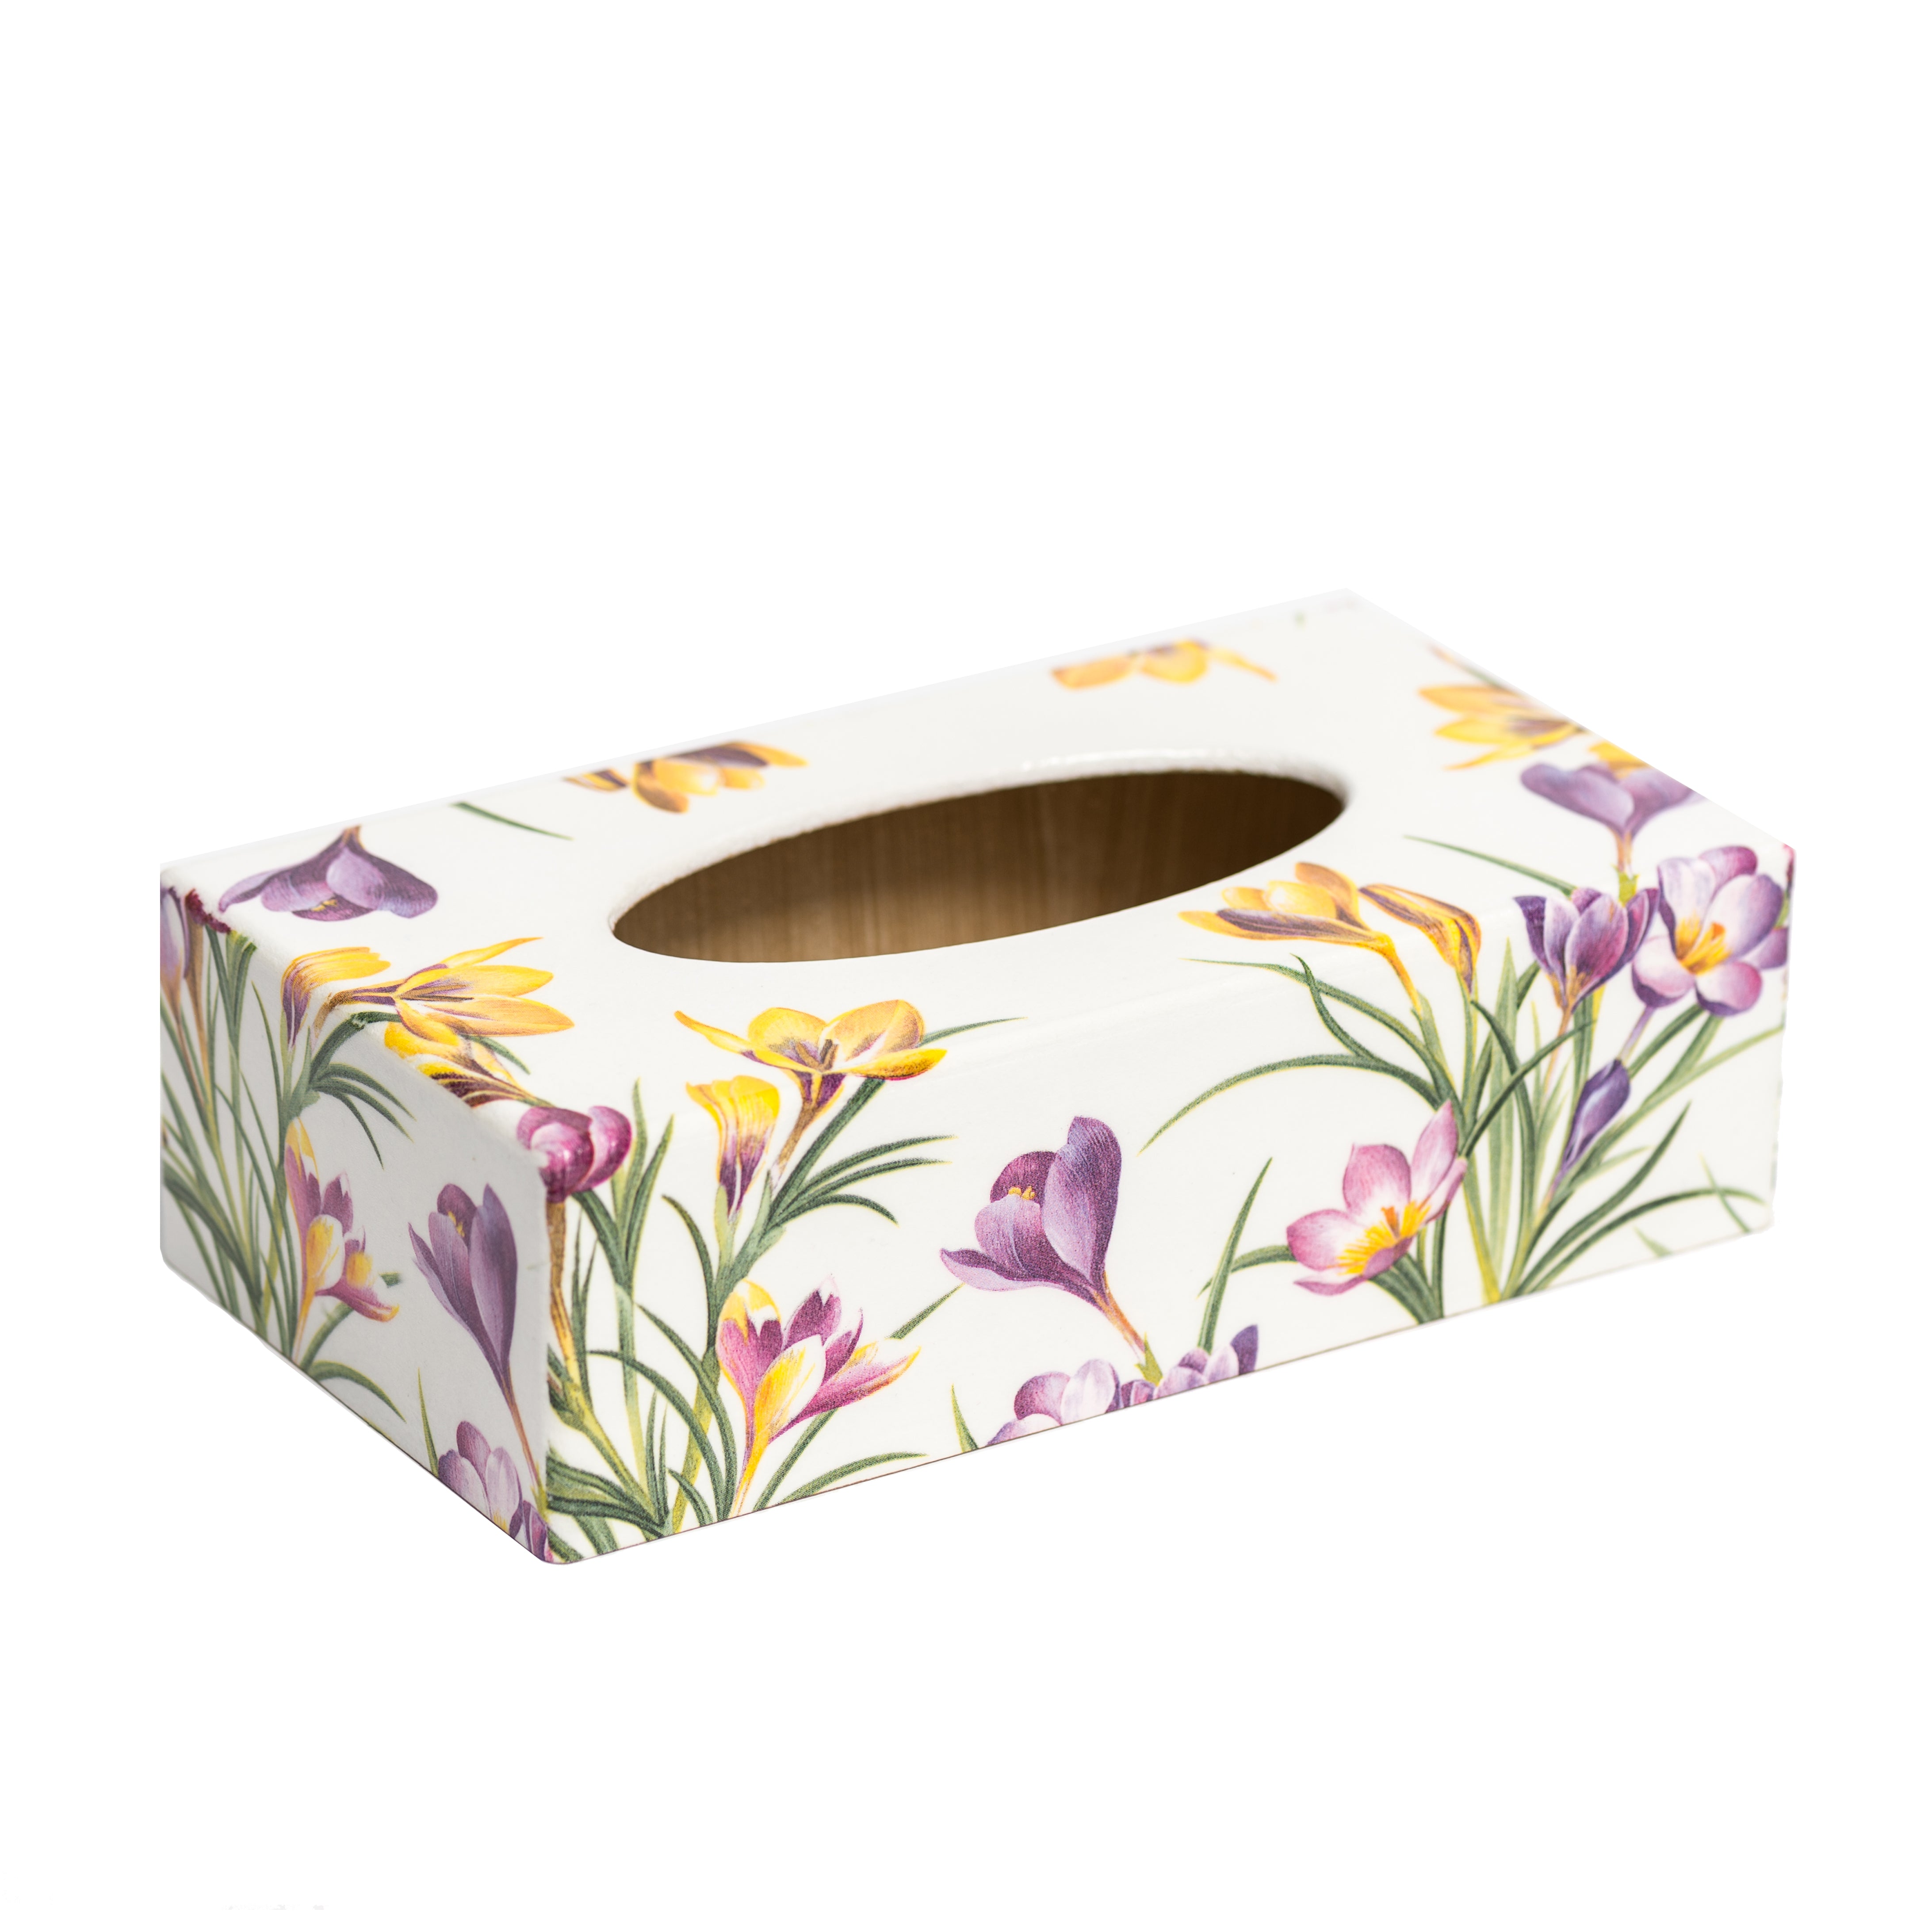 Crocus Tissue Box Cover - Rectangle